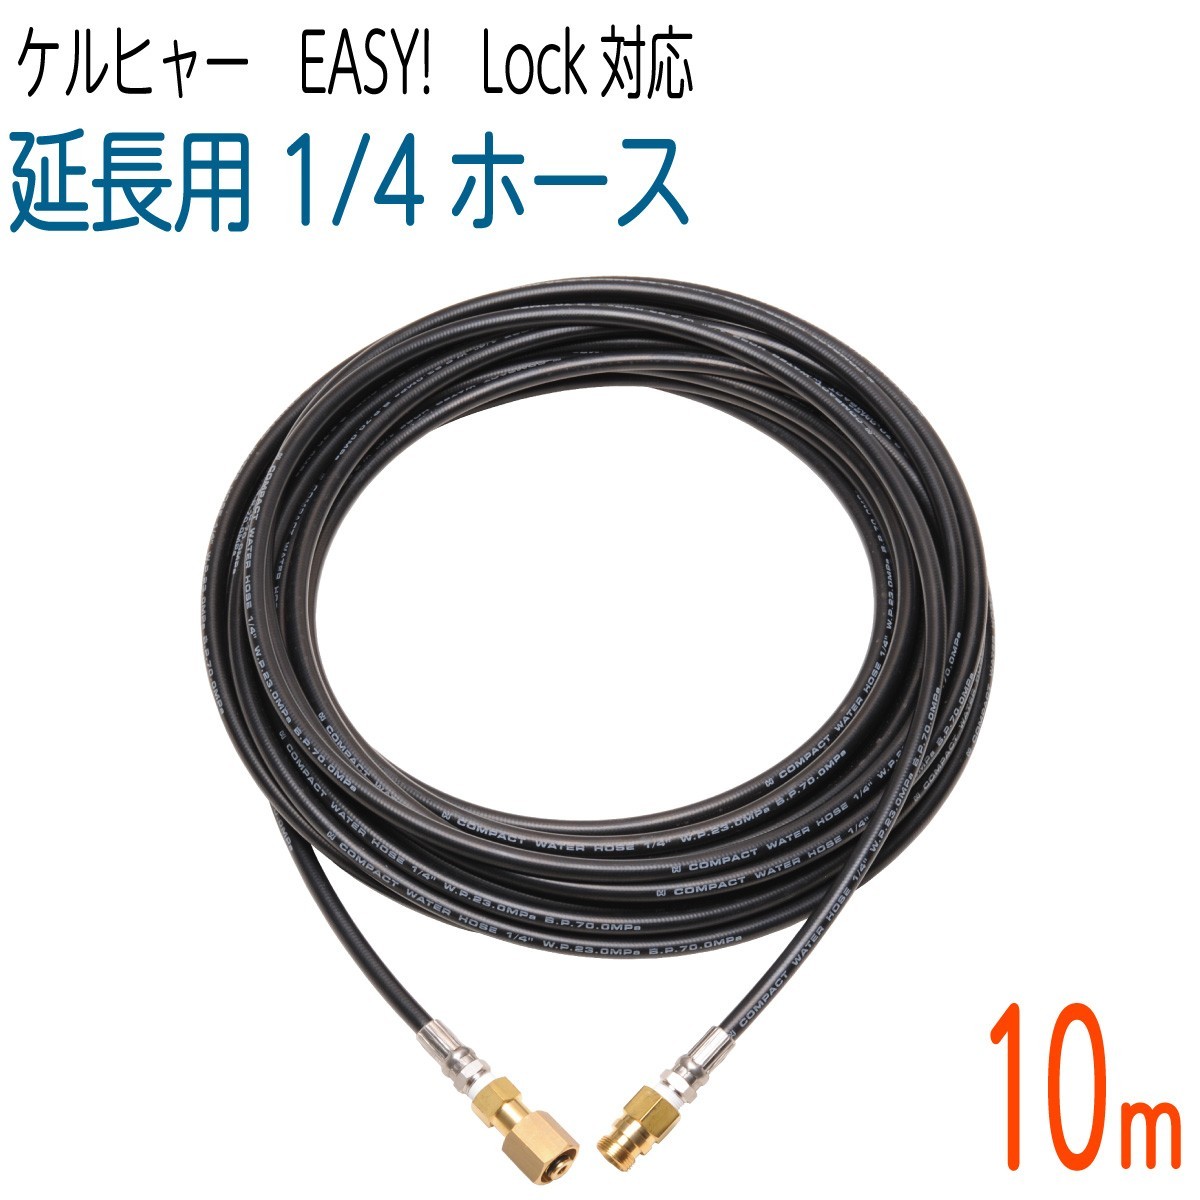 10M】1/4サイズ ケルヒャー 新型HDシリーズ Easy!Lock 対応 コンパクト